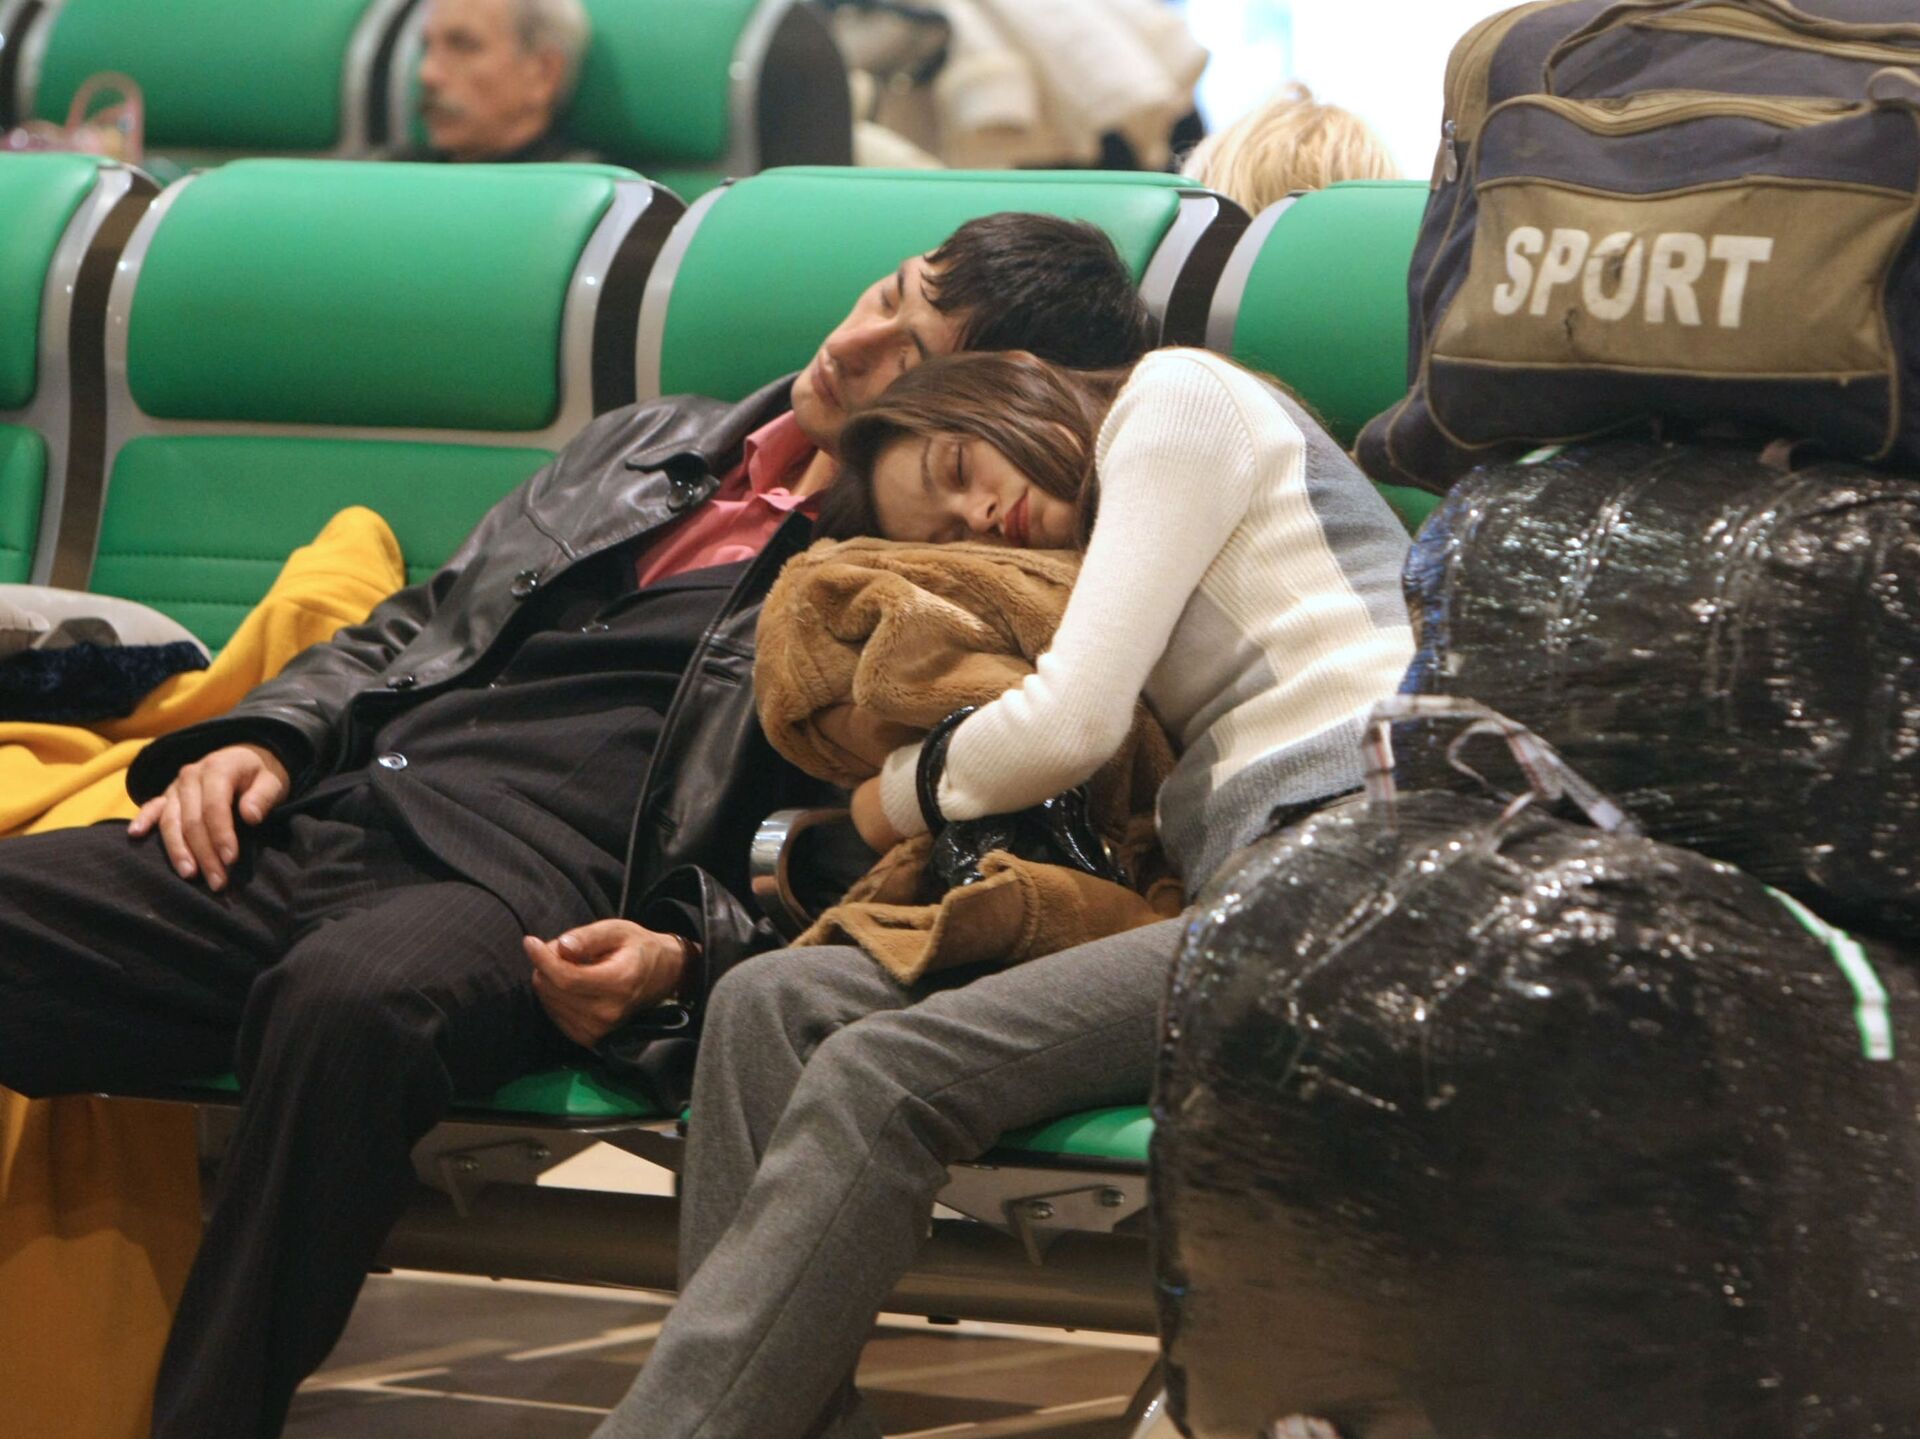 Домодедово аэропорт таджики уезжают. Узбеки в аэропорту. Мигранты в аэропорту. Застряли в аэропорту. Таджики в аэропорту.